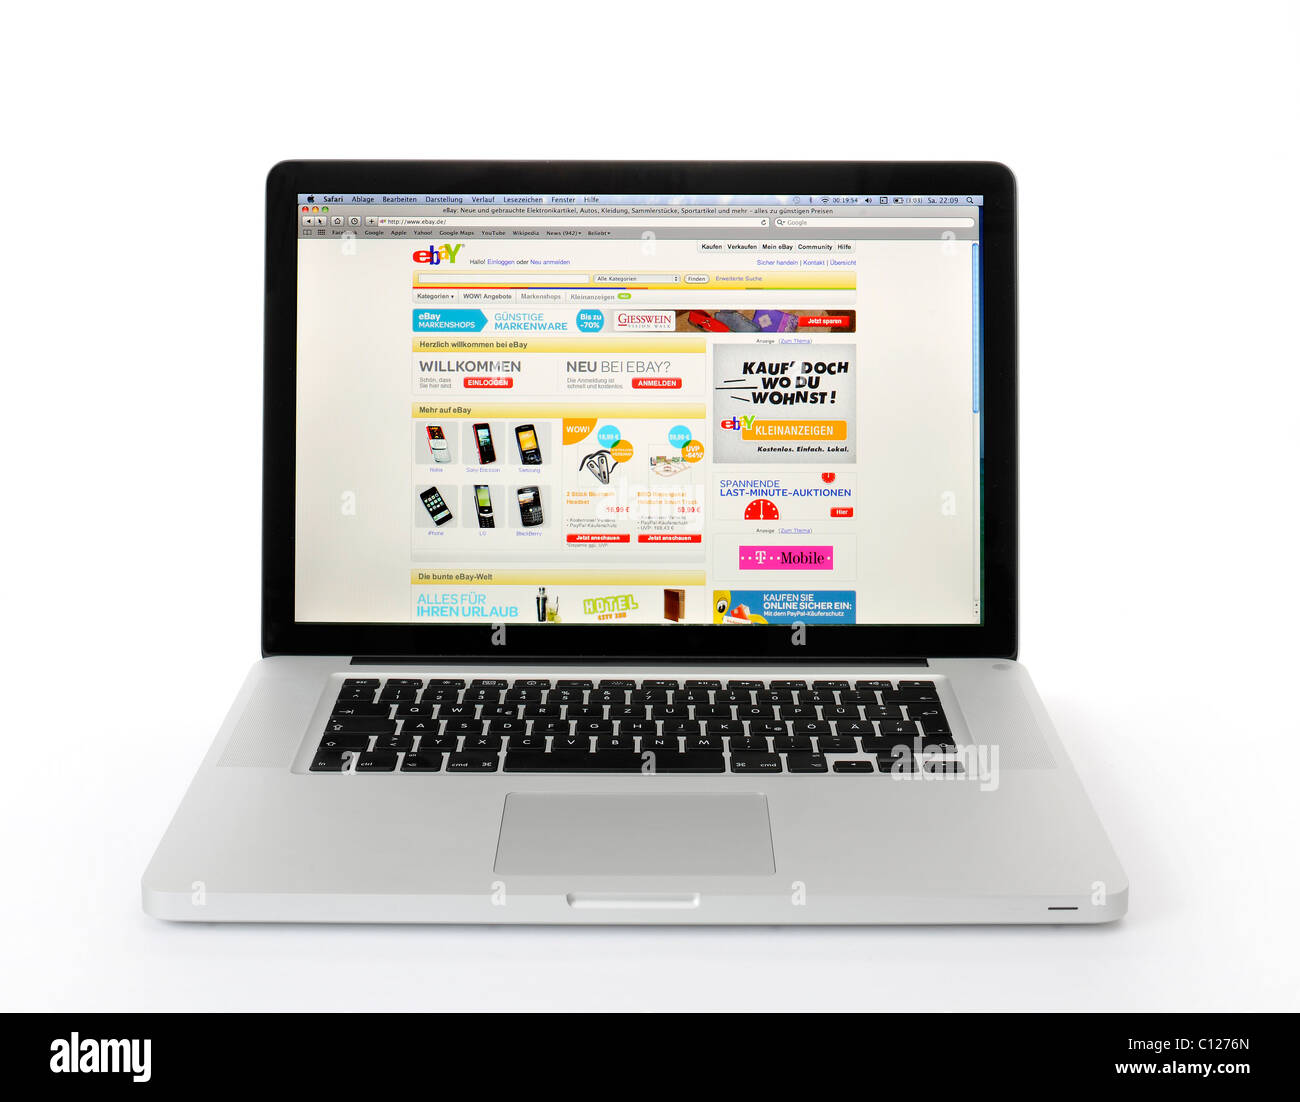 L'écran de l'ordinateur portable, l'enchère eBAY, image symbolique magasinage en ligne Banque D'Images